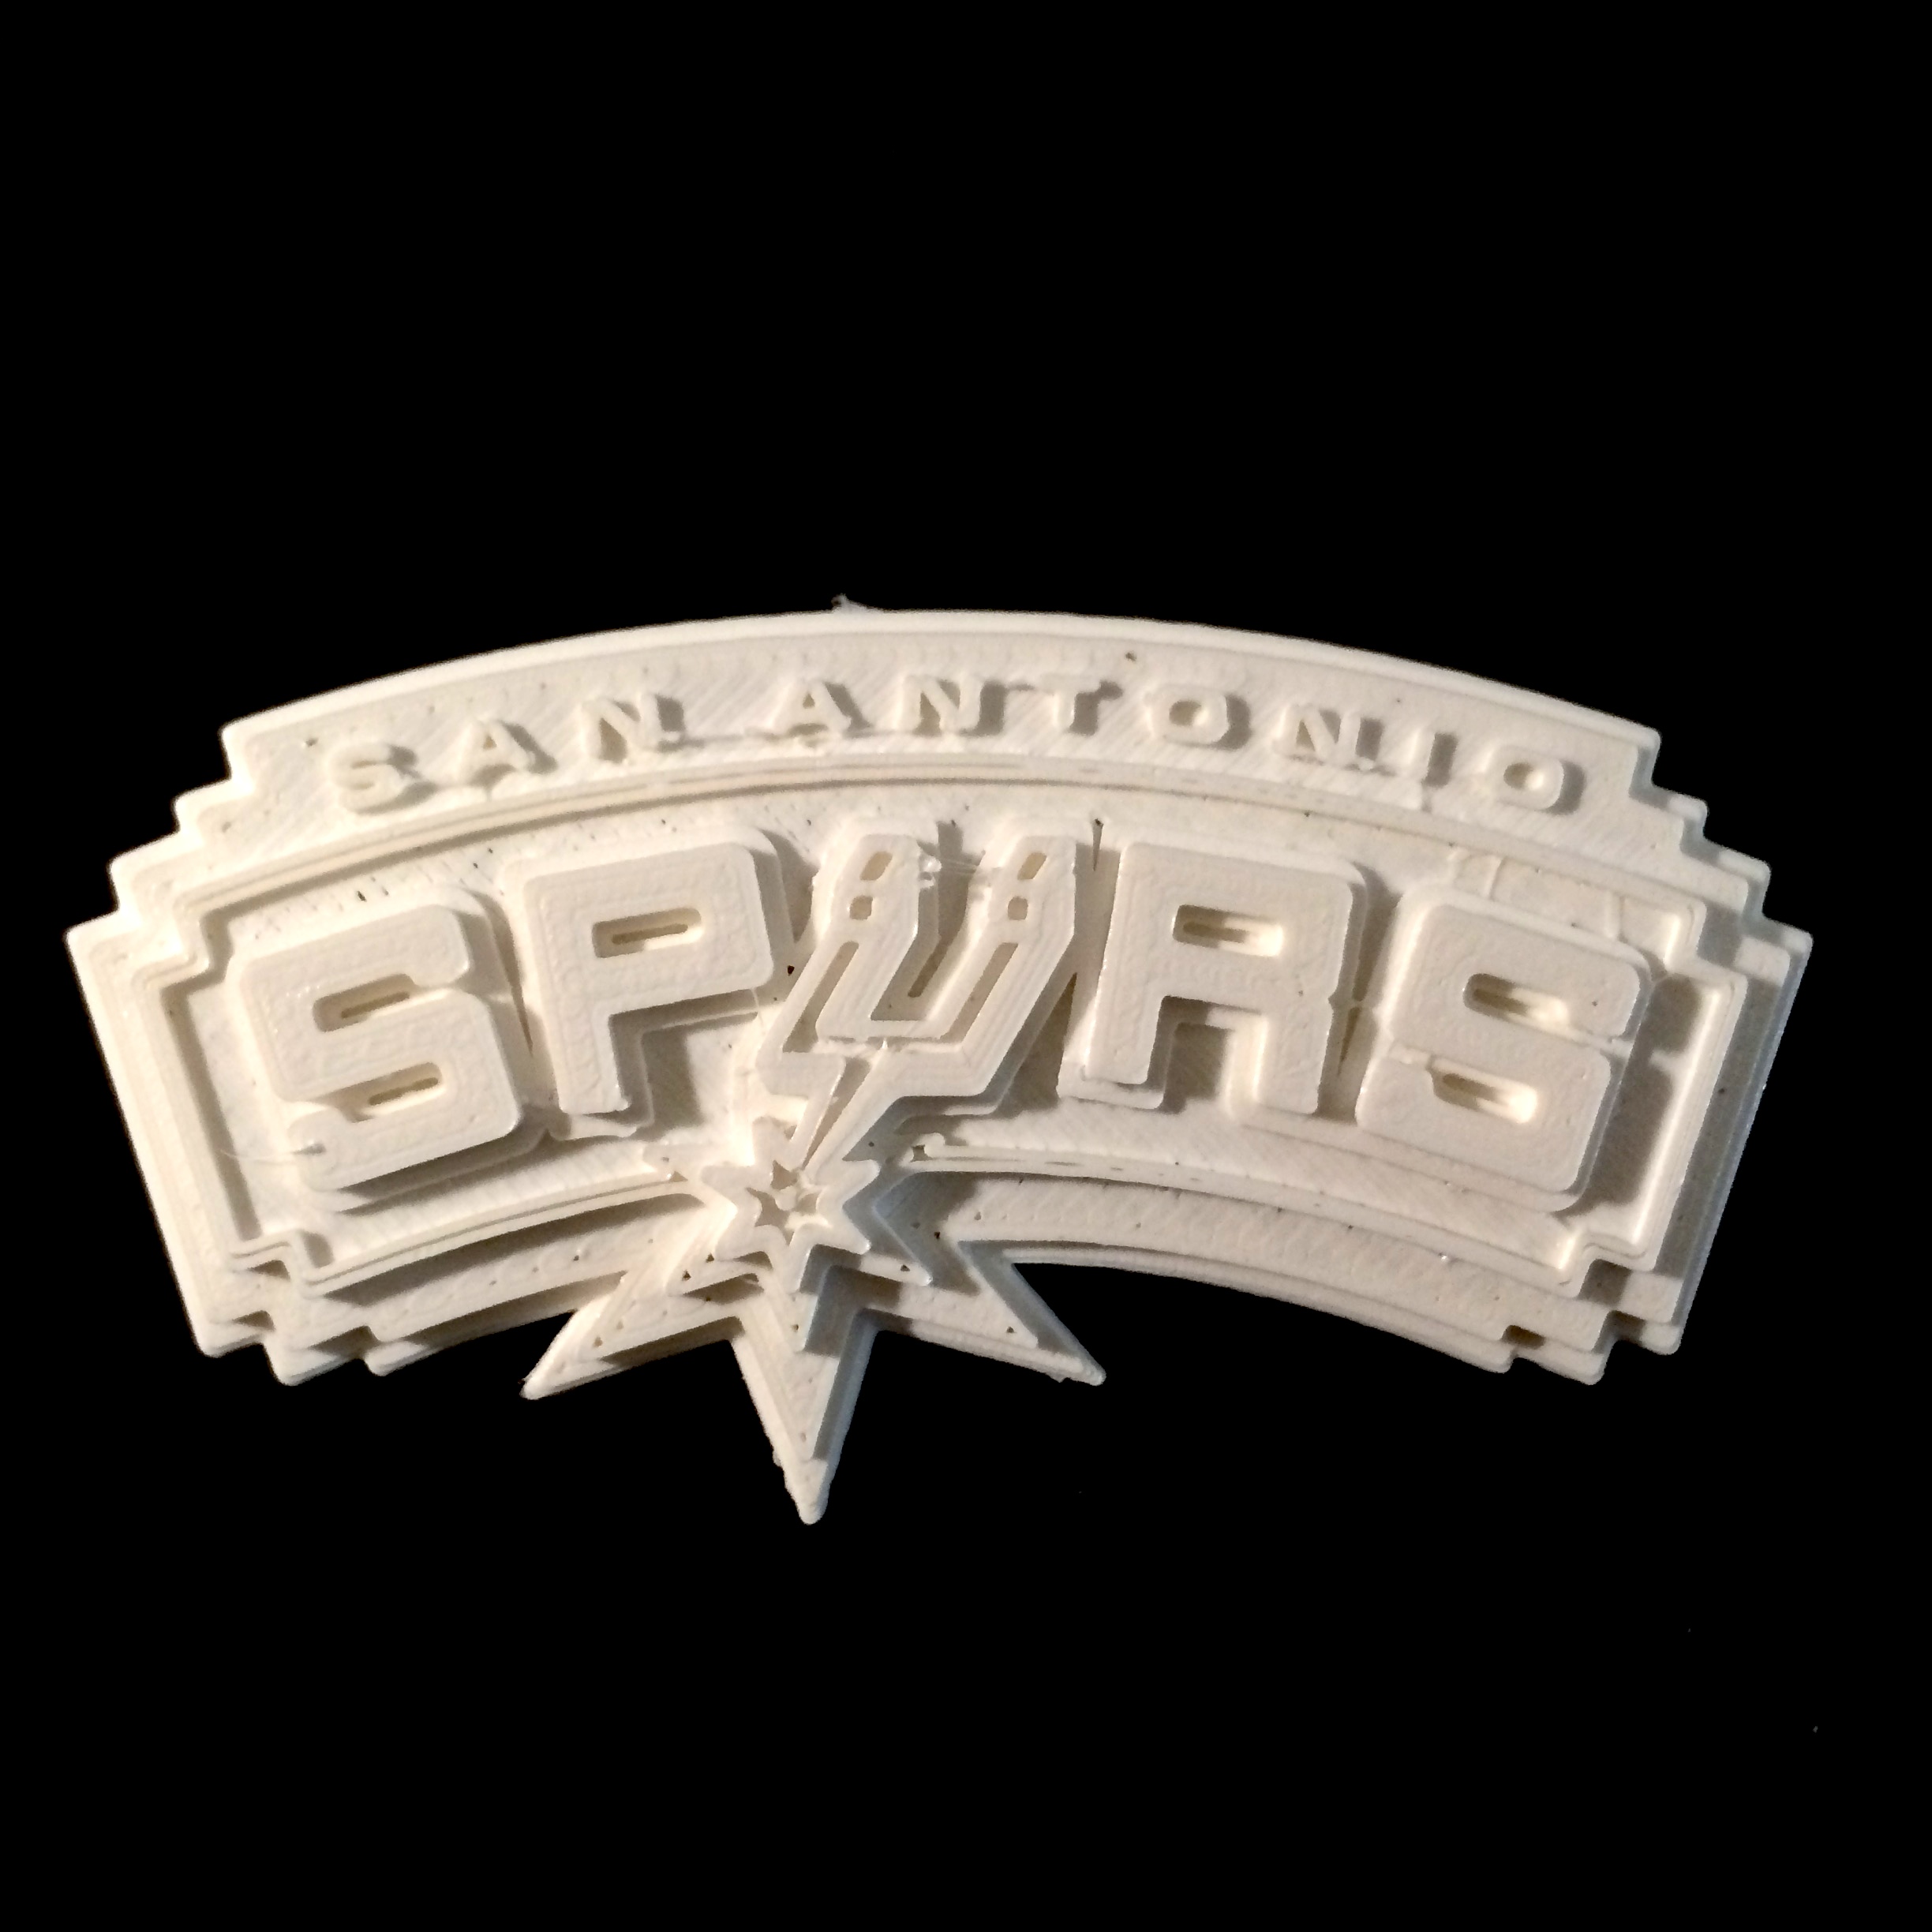 San Antonio Spurs - Logo